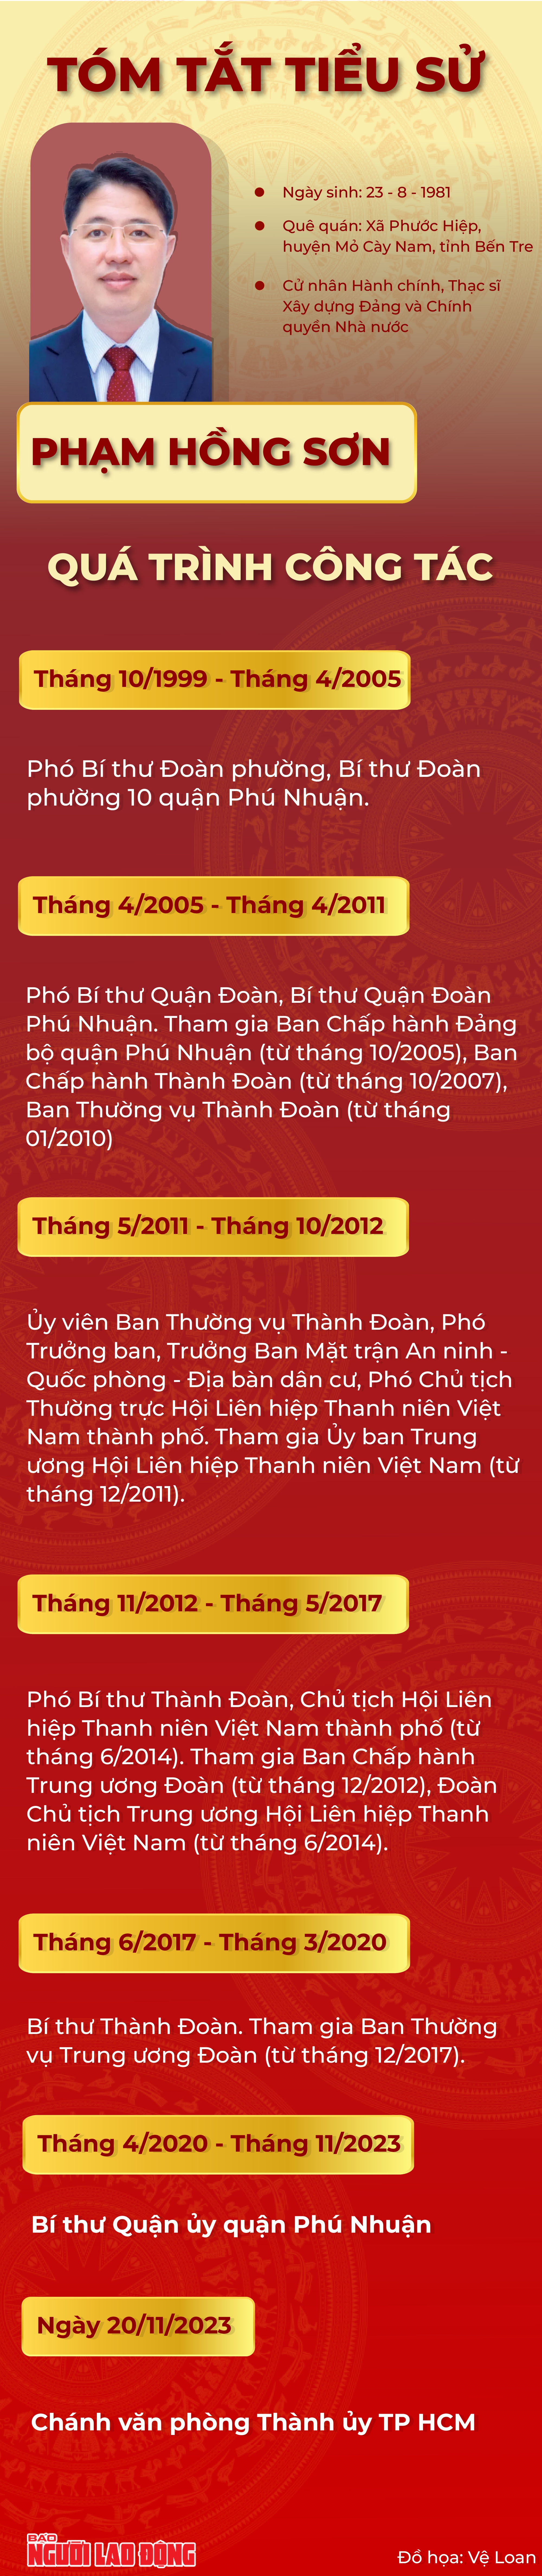 Ông Phạm Hồng Sơn làm Chánh Văn phòng Thành ủy TP HCM - Ảnh 2.